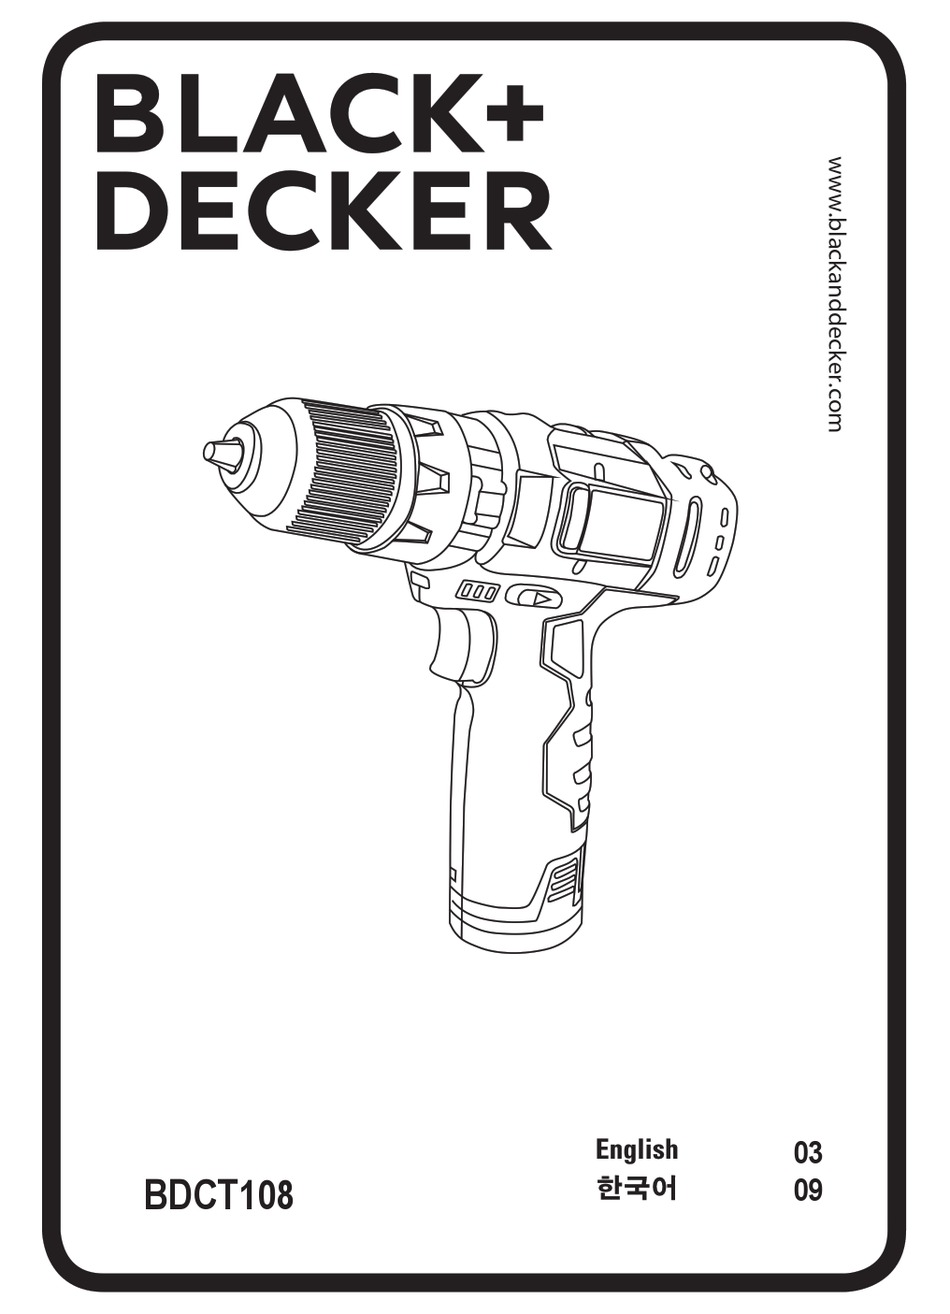 BLACK+DECKER BDCS50C-8LW, BDCS50C Instruction manual